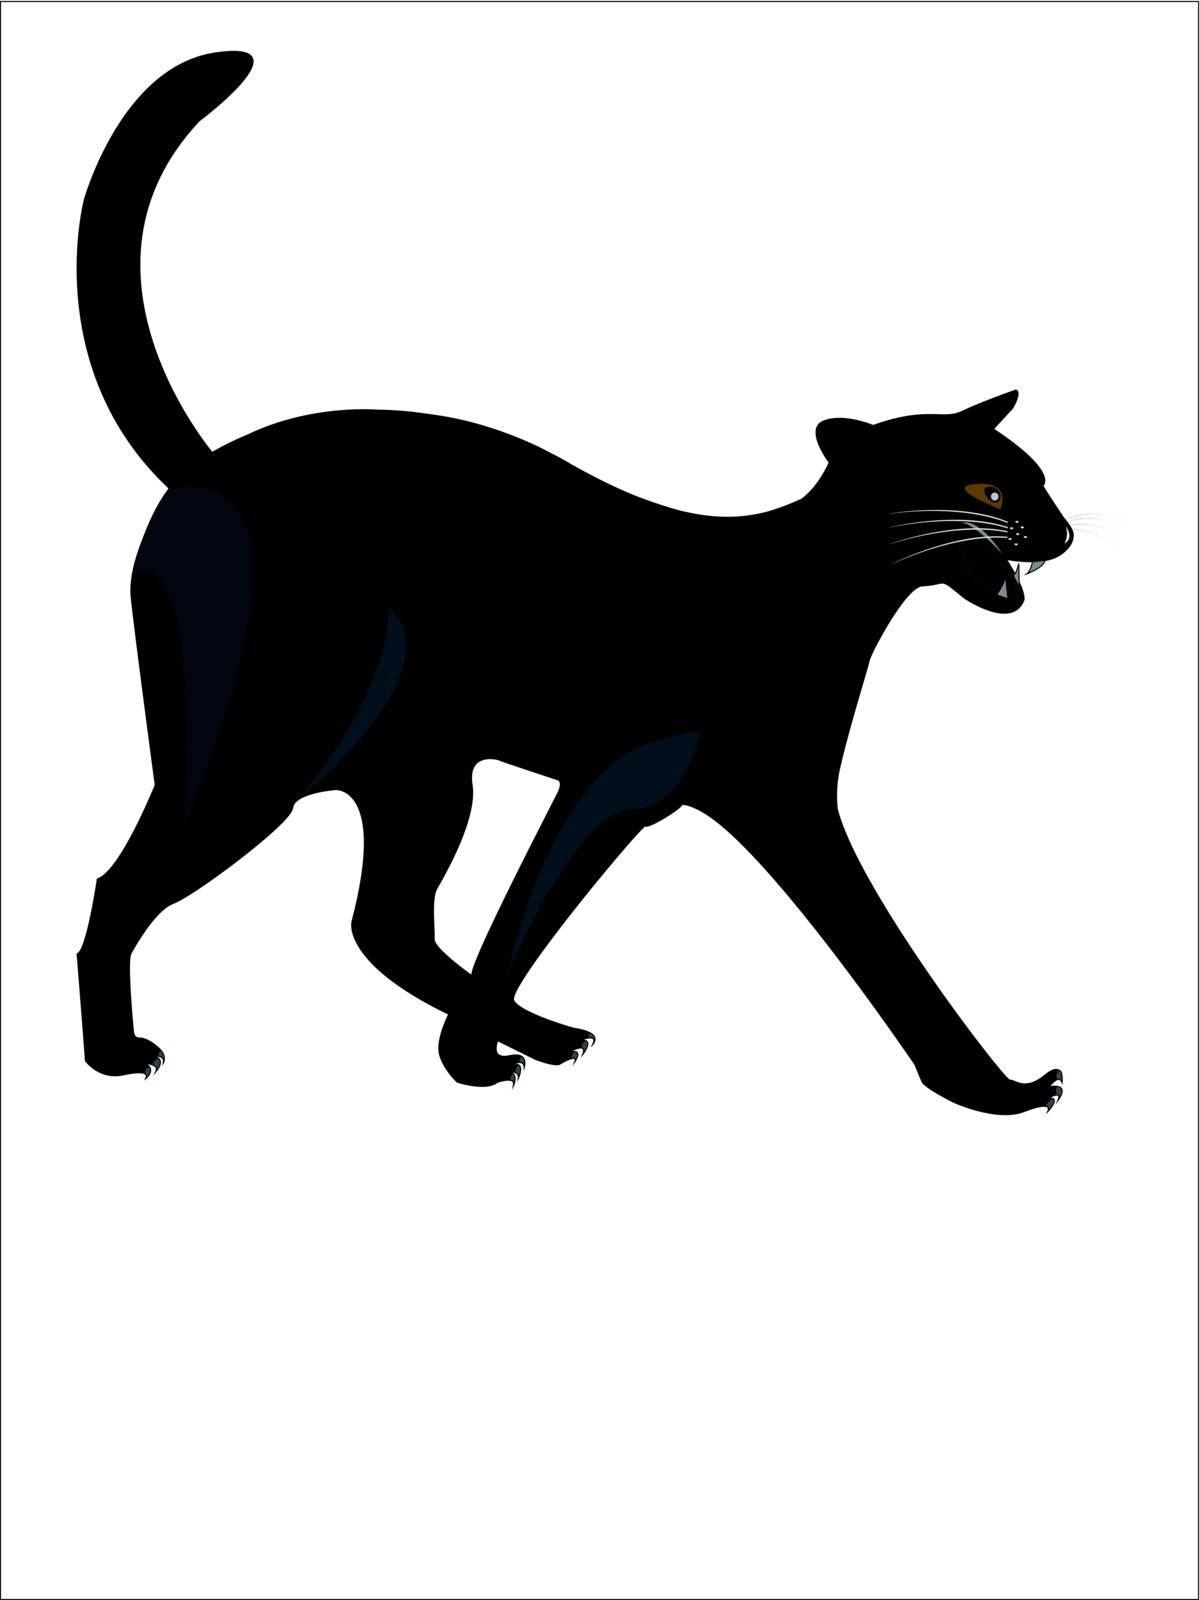 Black cat 02 by SoloN1ck